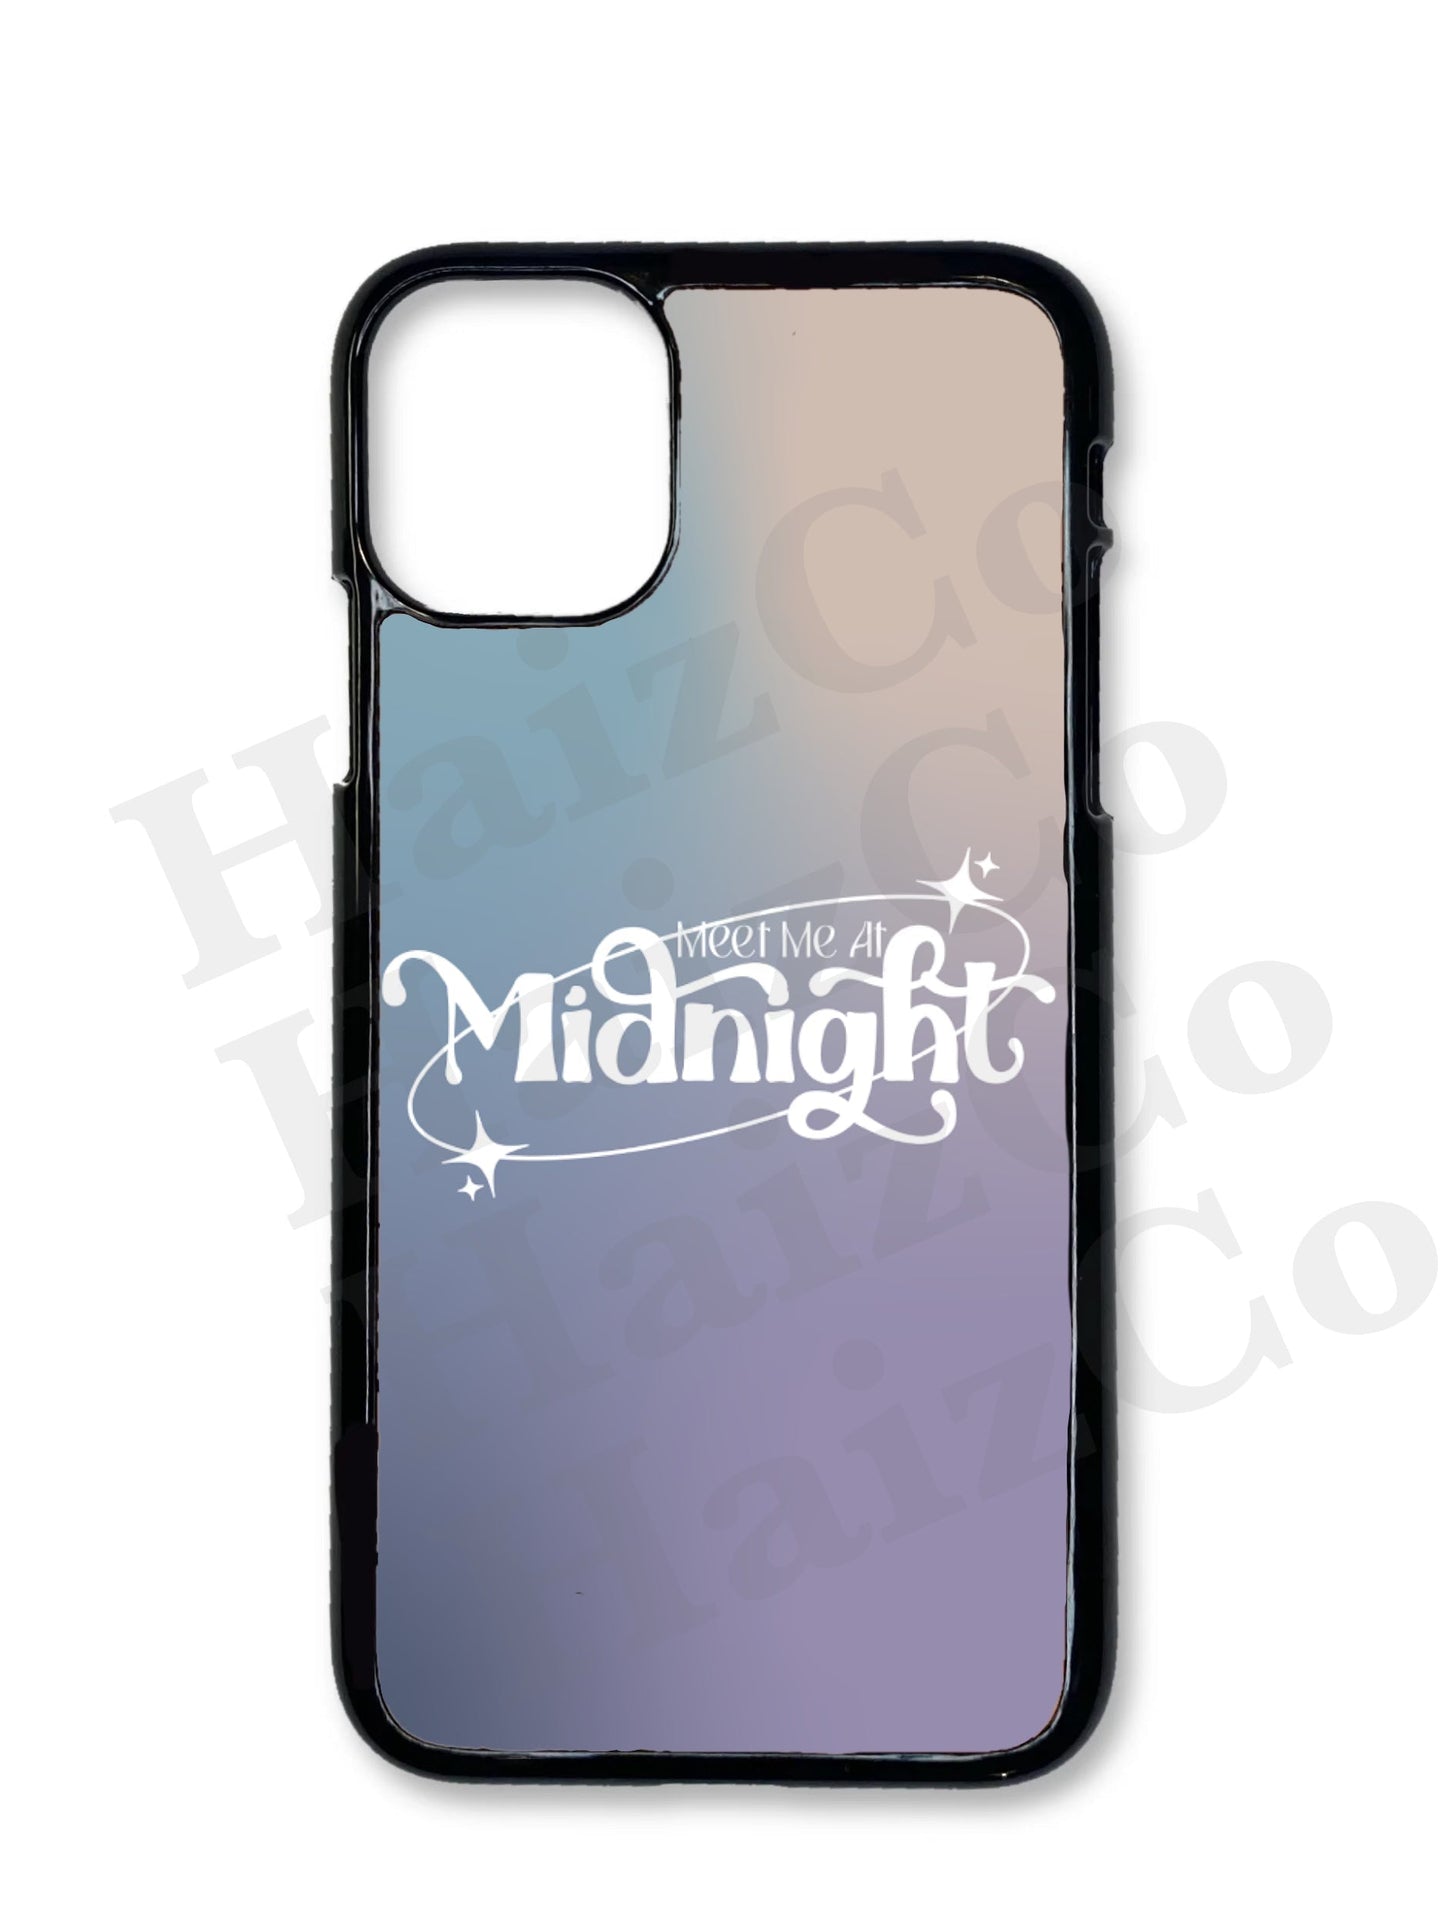 Midnights Phone Case